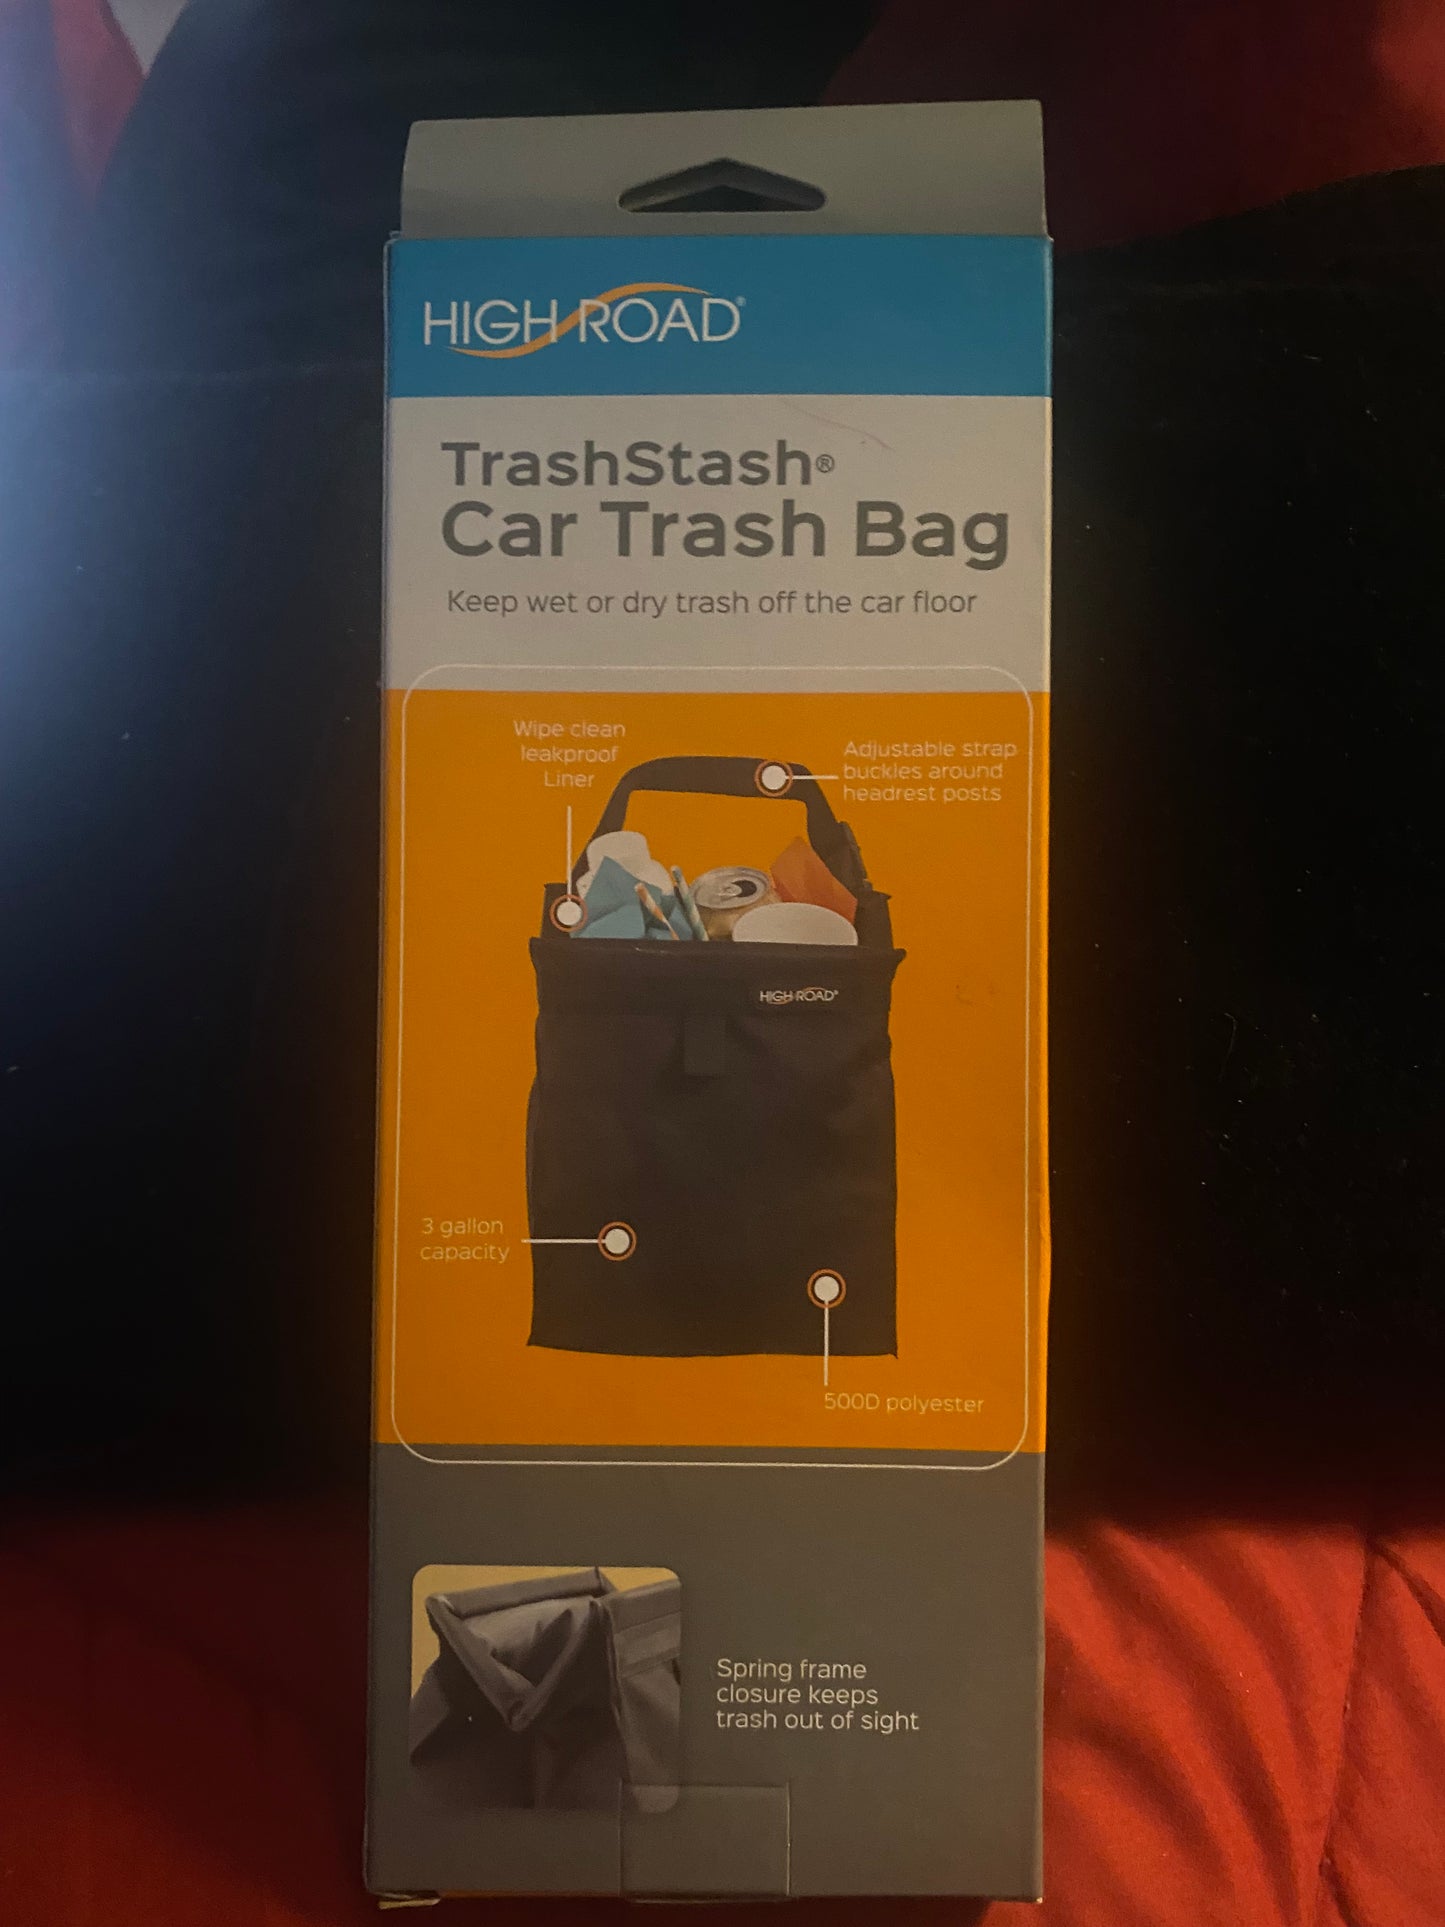 High Road Trash Stash Car Trash Bag